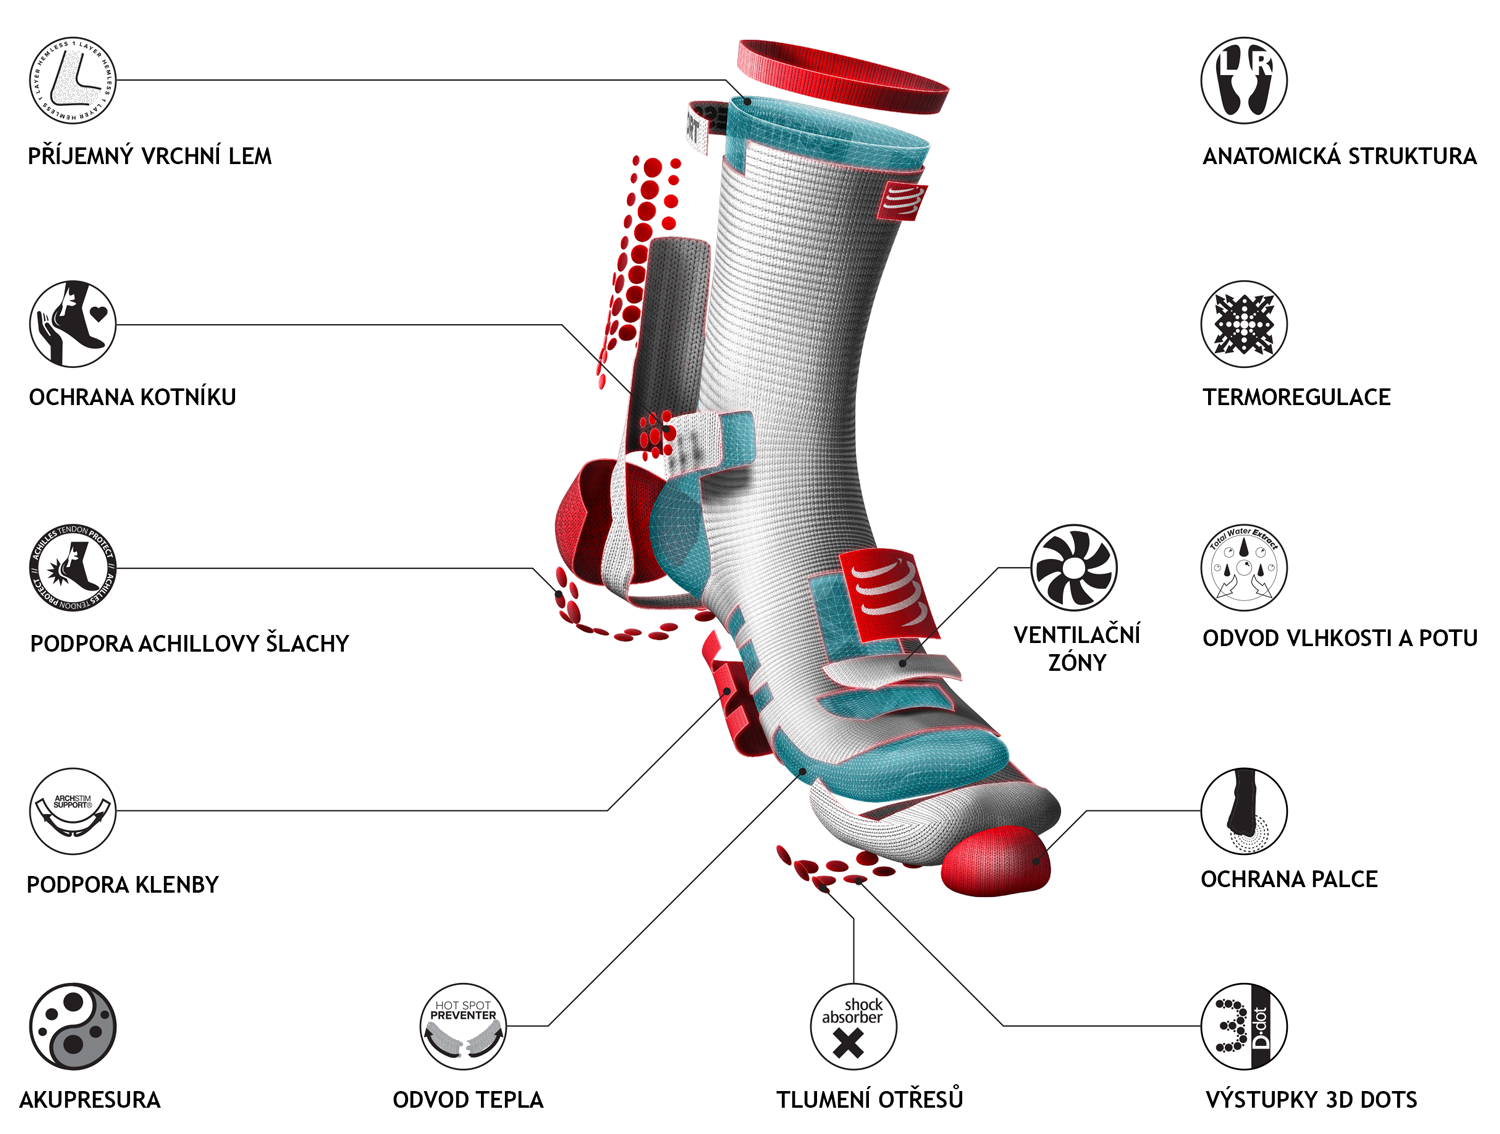 Popis klíčových vlastností ponožek - příjemný horní lem, anatomická struktura, ochrana kotníku, termoregulace, podpora achillovy šlachy, odvod vlhkosti a potu a další vychytávky.